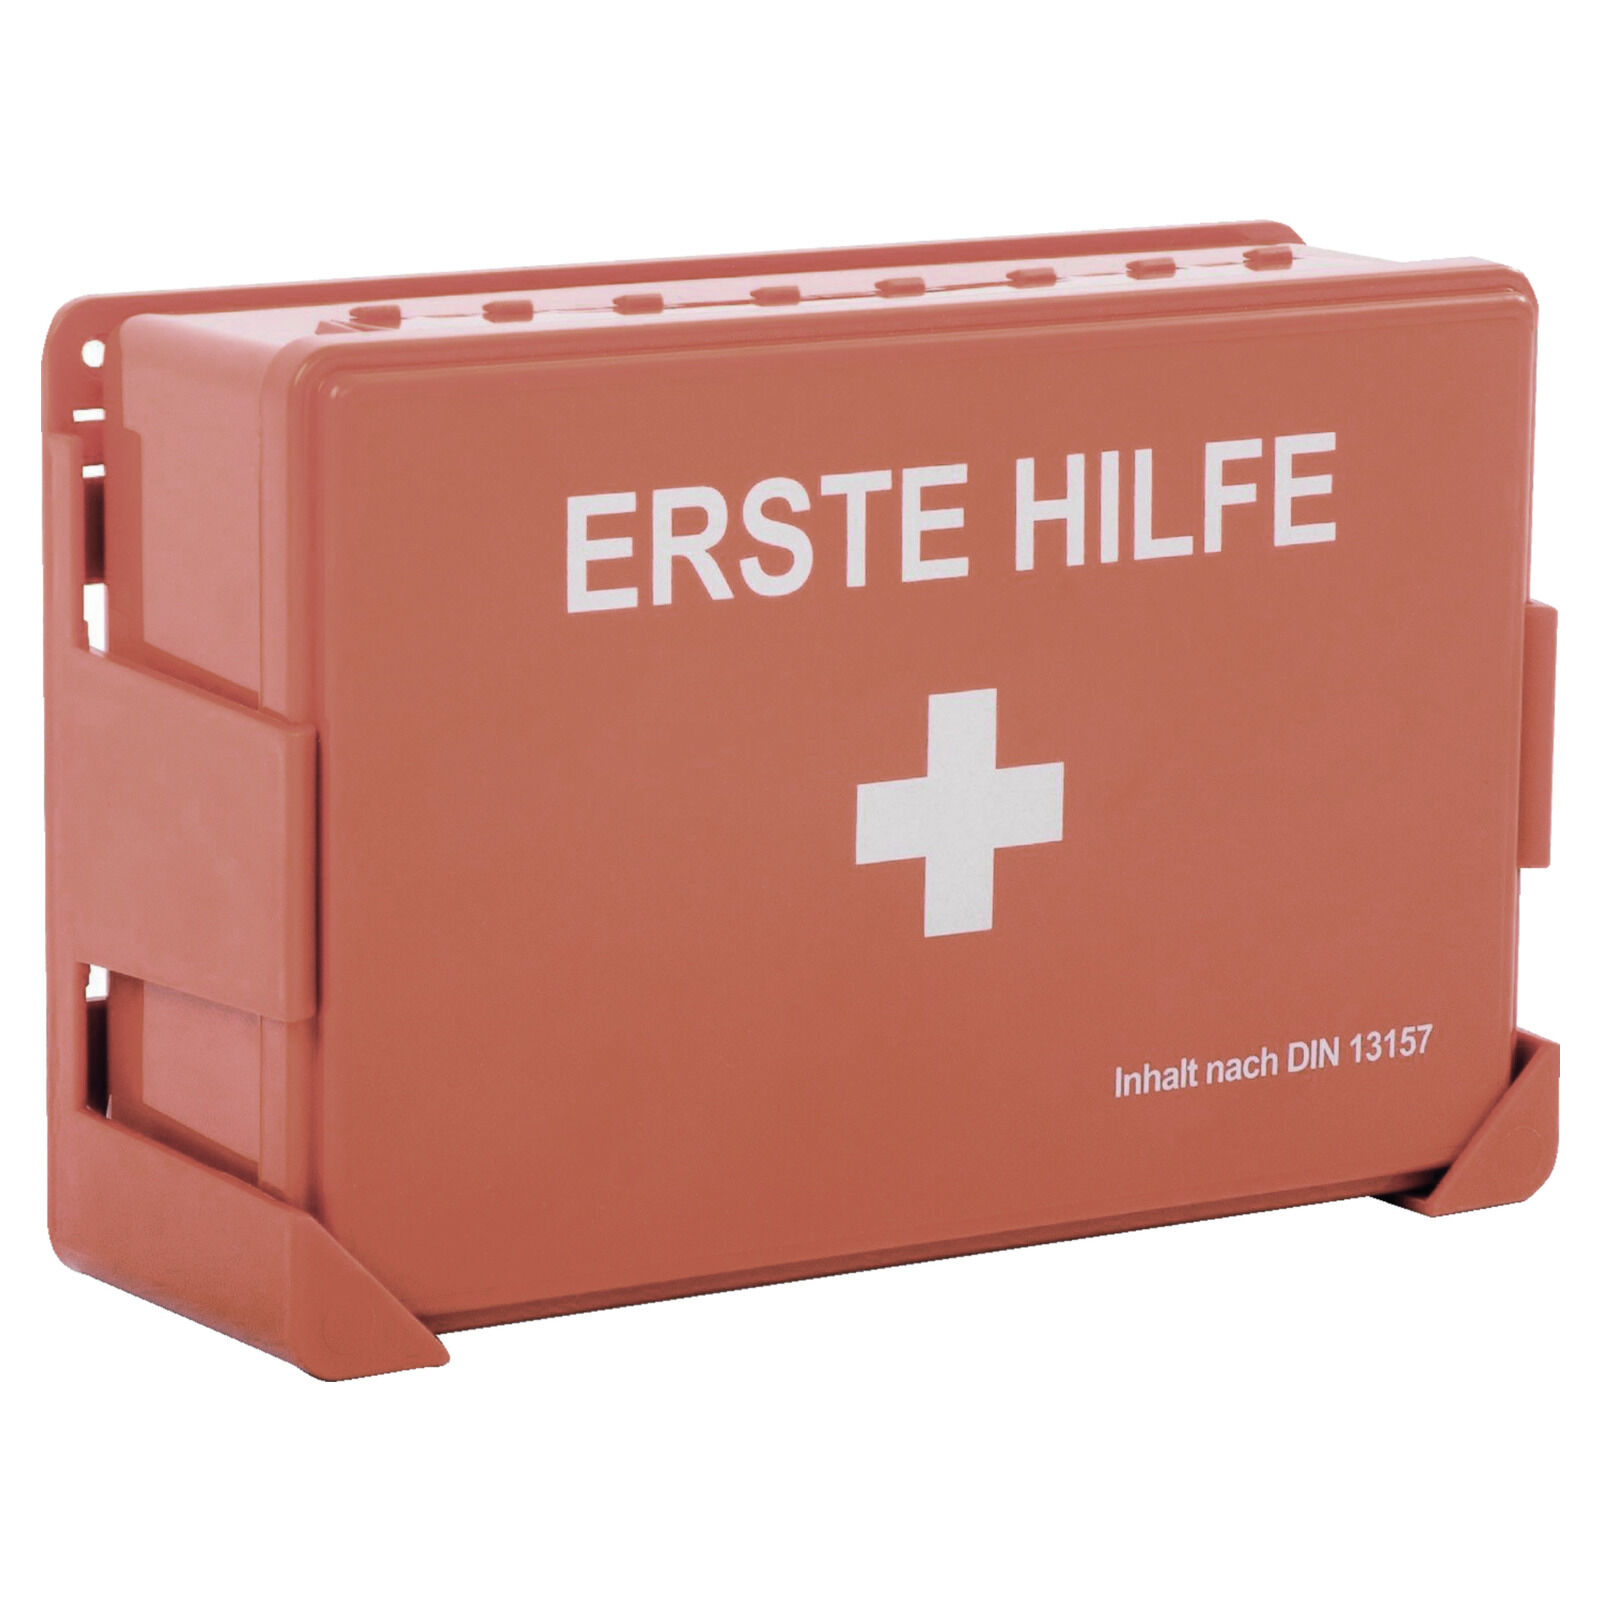 Erste-Hilfe-Sanitätskoffer, mittel nach DIN 13169 für mittle - Erste Hilfe  für den Laden Ladenbedarf